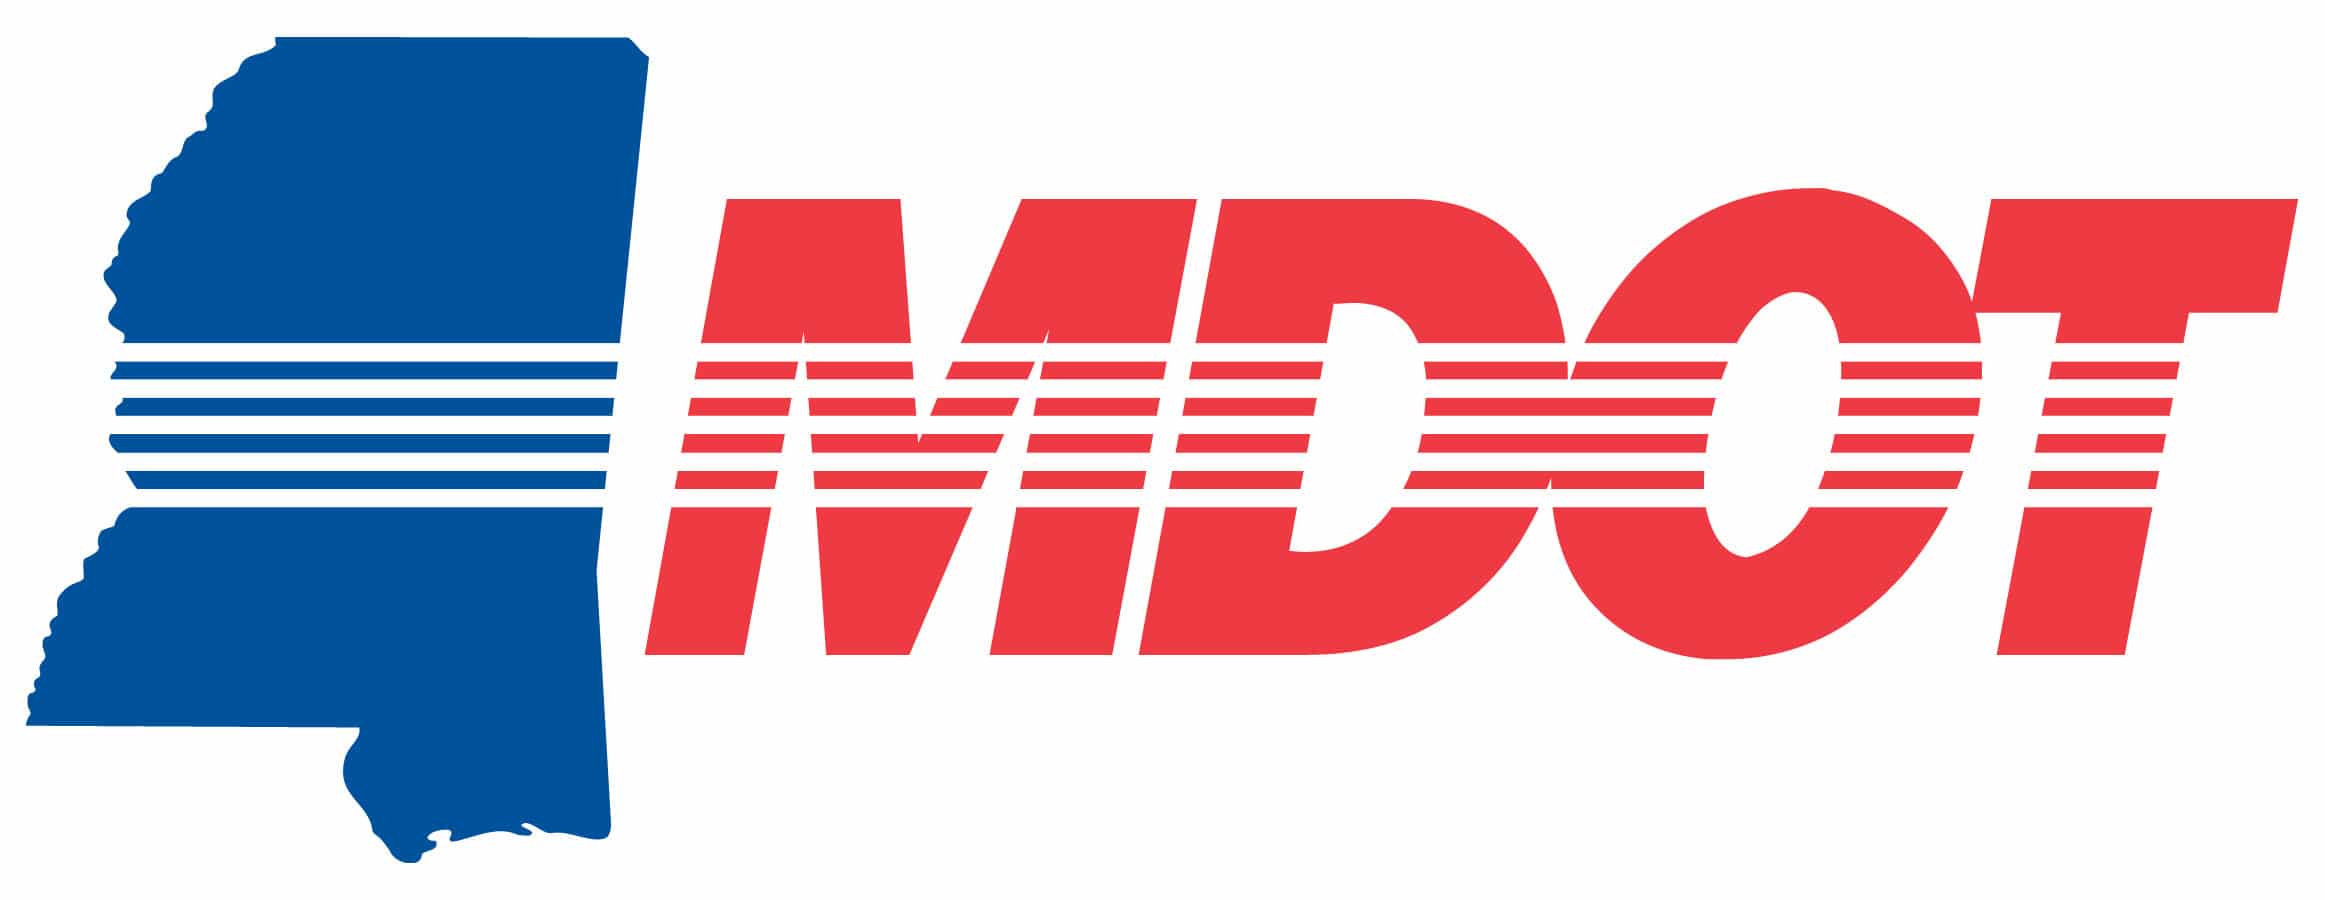 MDOT Logo - Mdot Logos